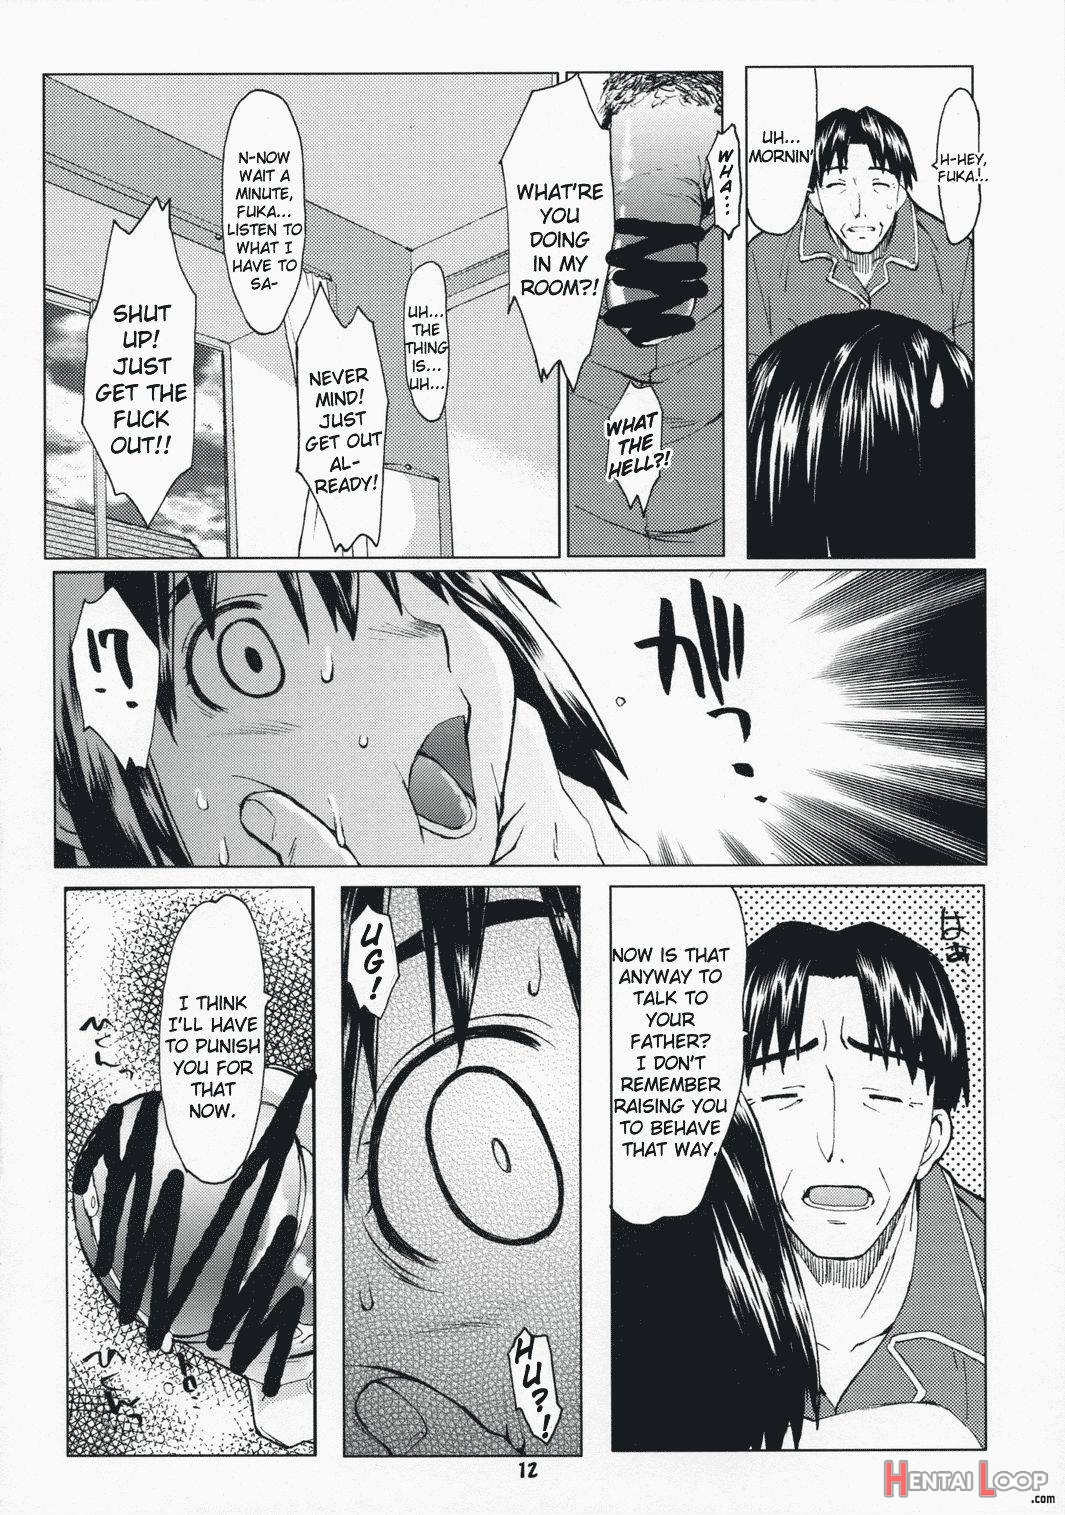 Natsukaze #1 page 9